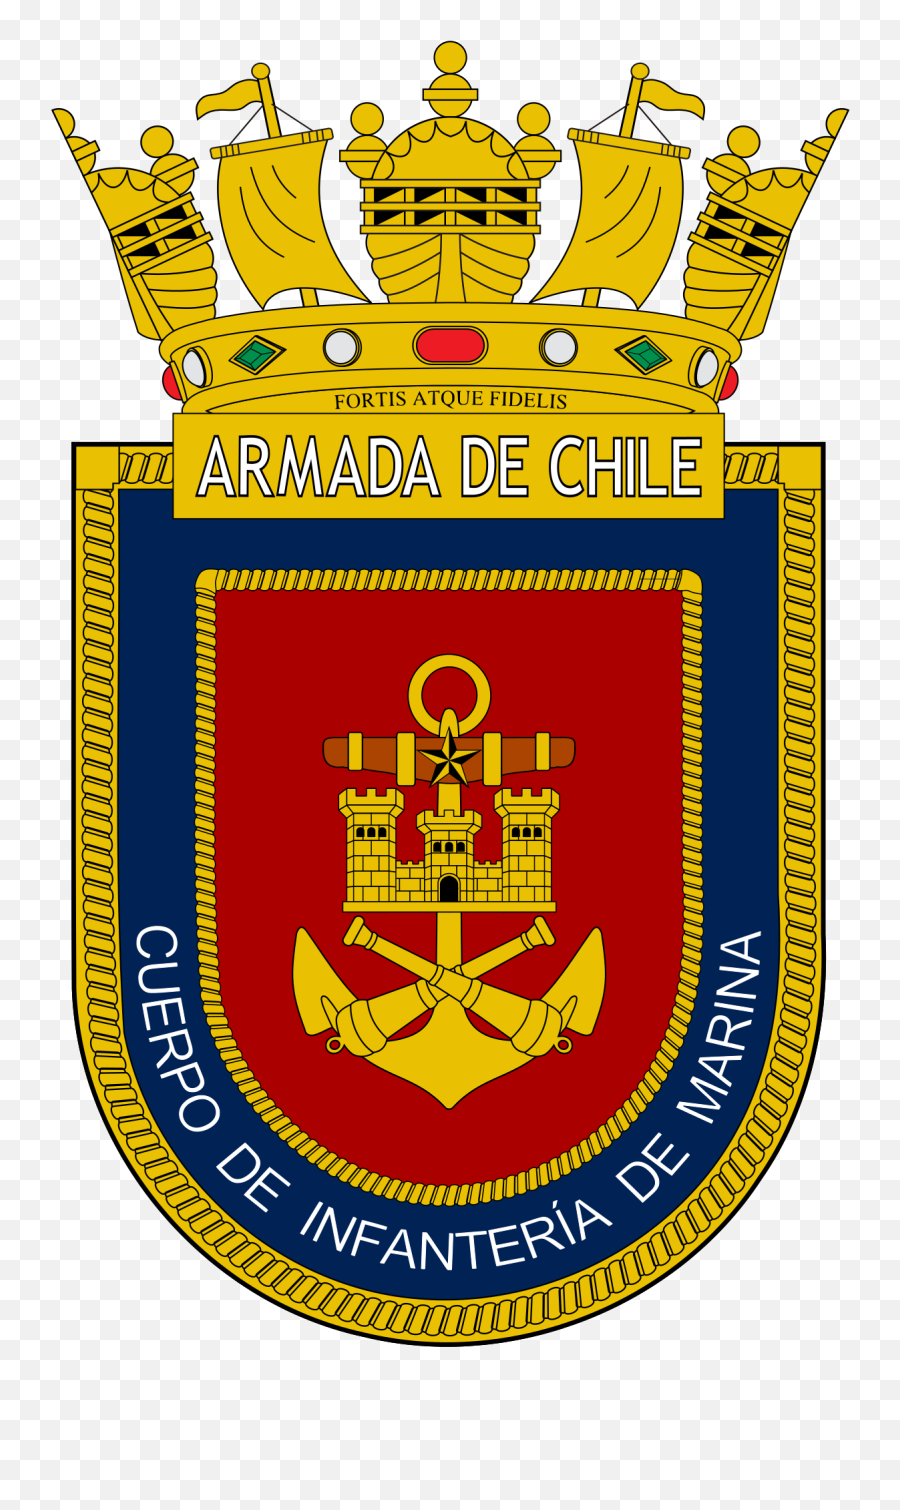 Cuerpo De Infantería De Marina De Chile - Wikipedia La Emoji,Refranes En Emoticons